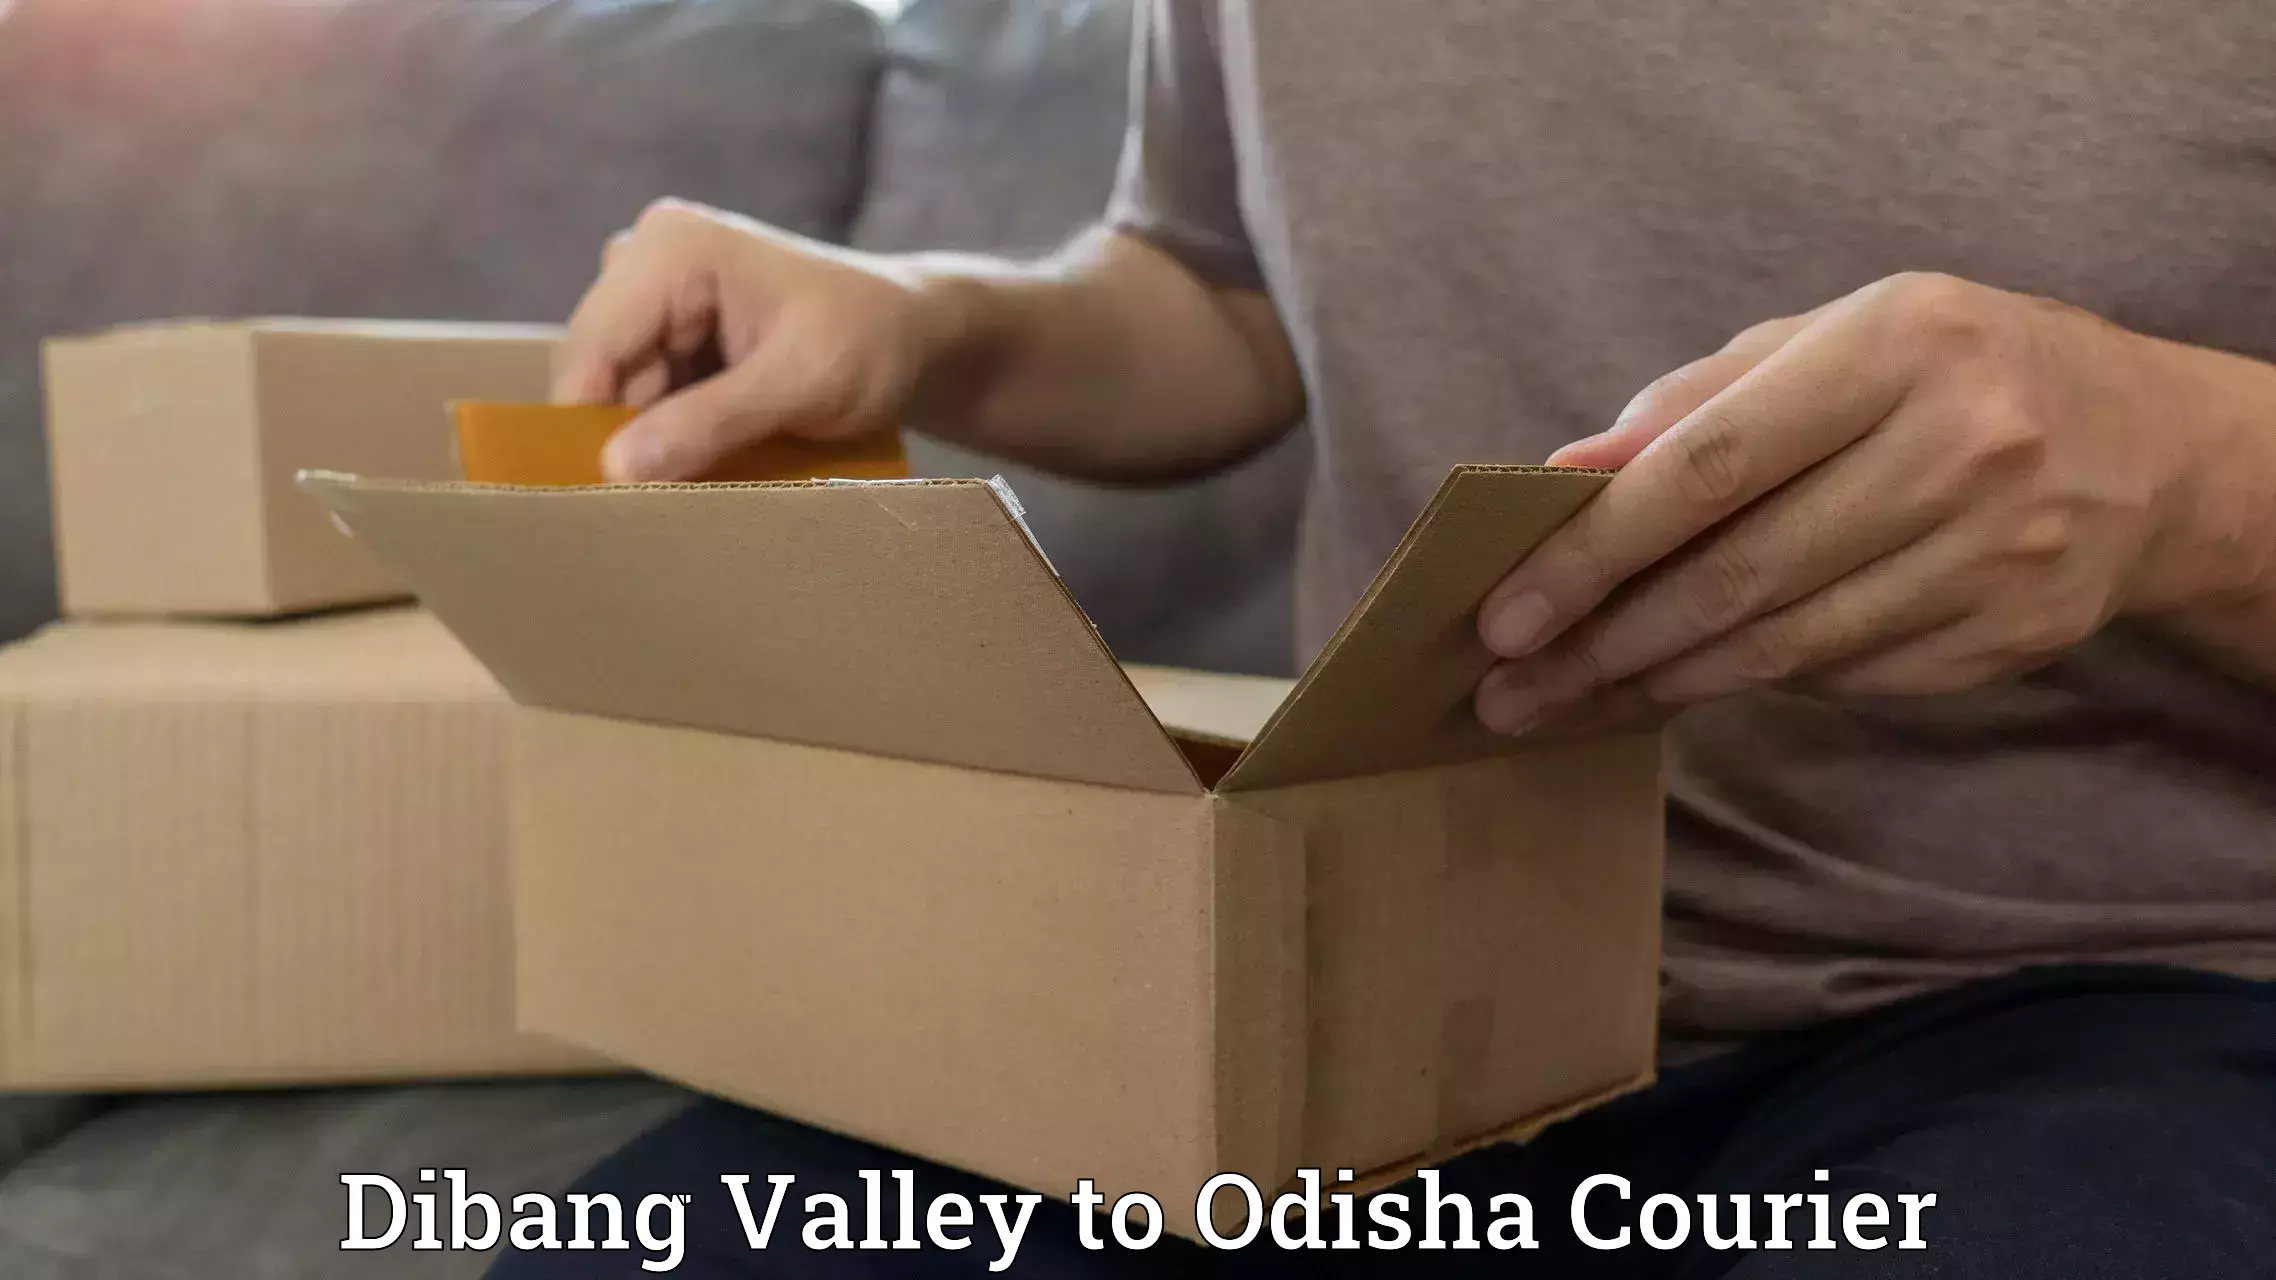 Reliable courier service Dibang Valley to Badagada